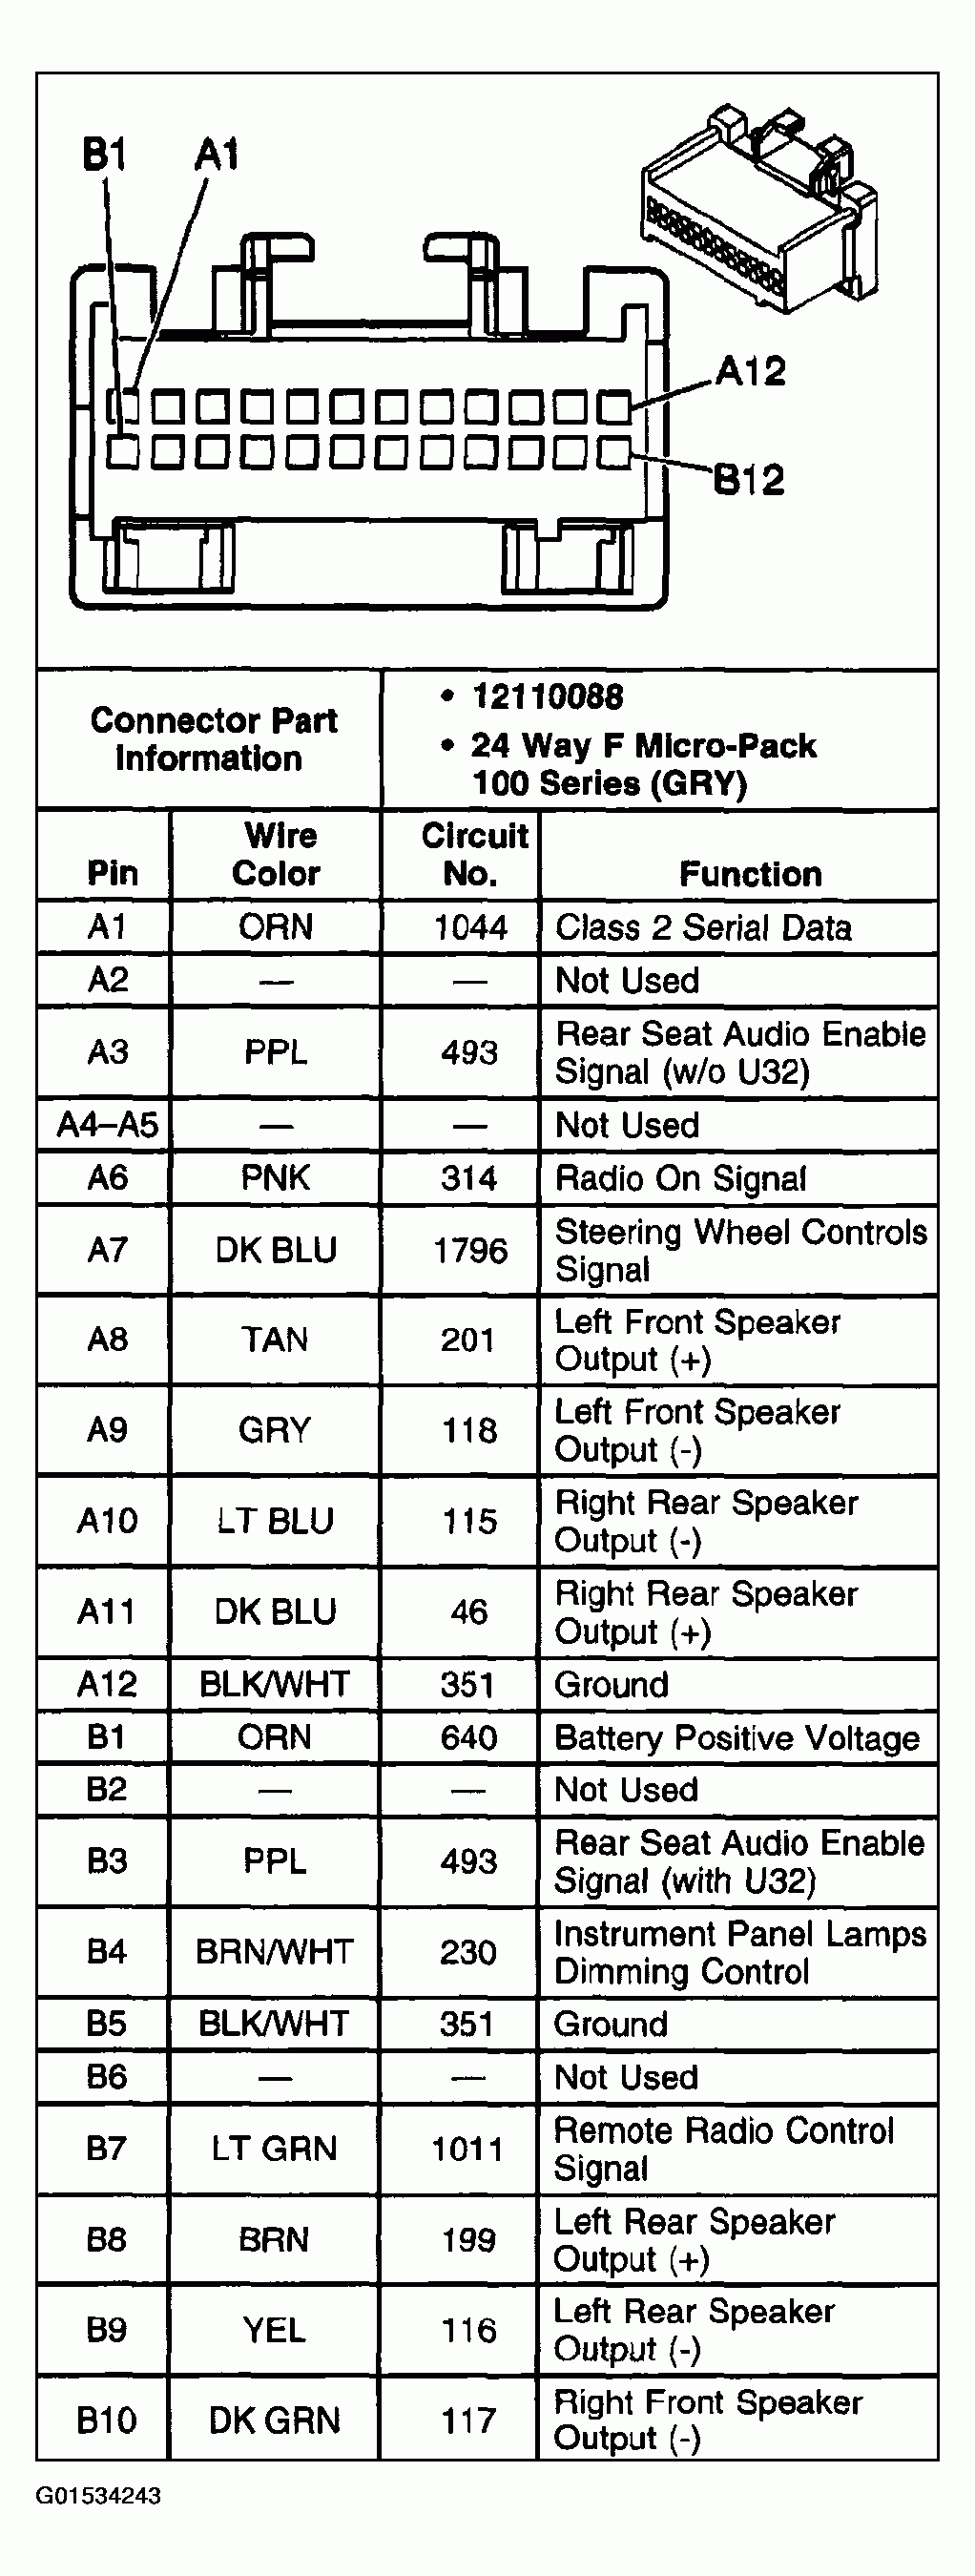 1999 Chevy Silverado Radio Wiring Diagram from 2020cadillac.com